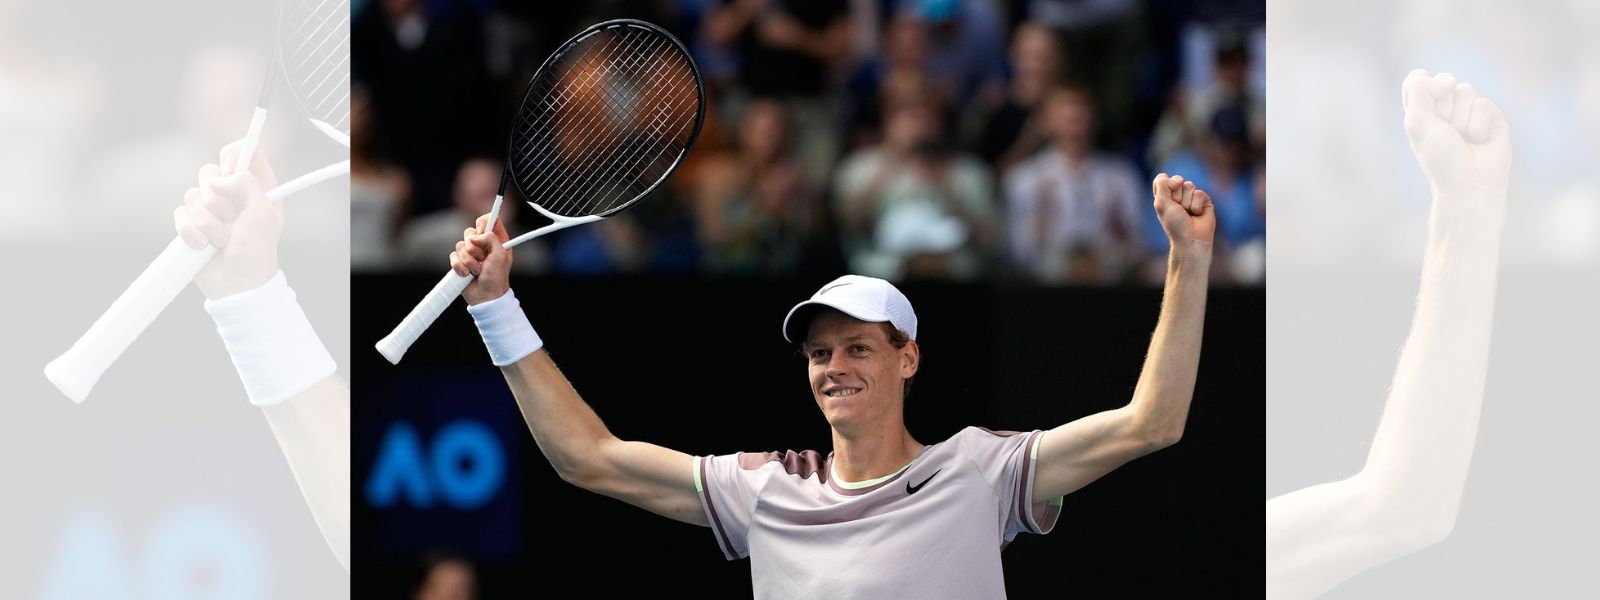 Italian Jannik Sinner wins Australian Open